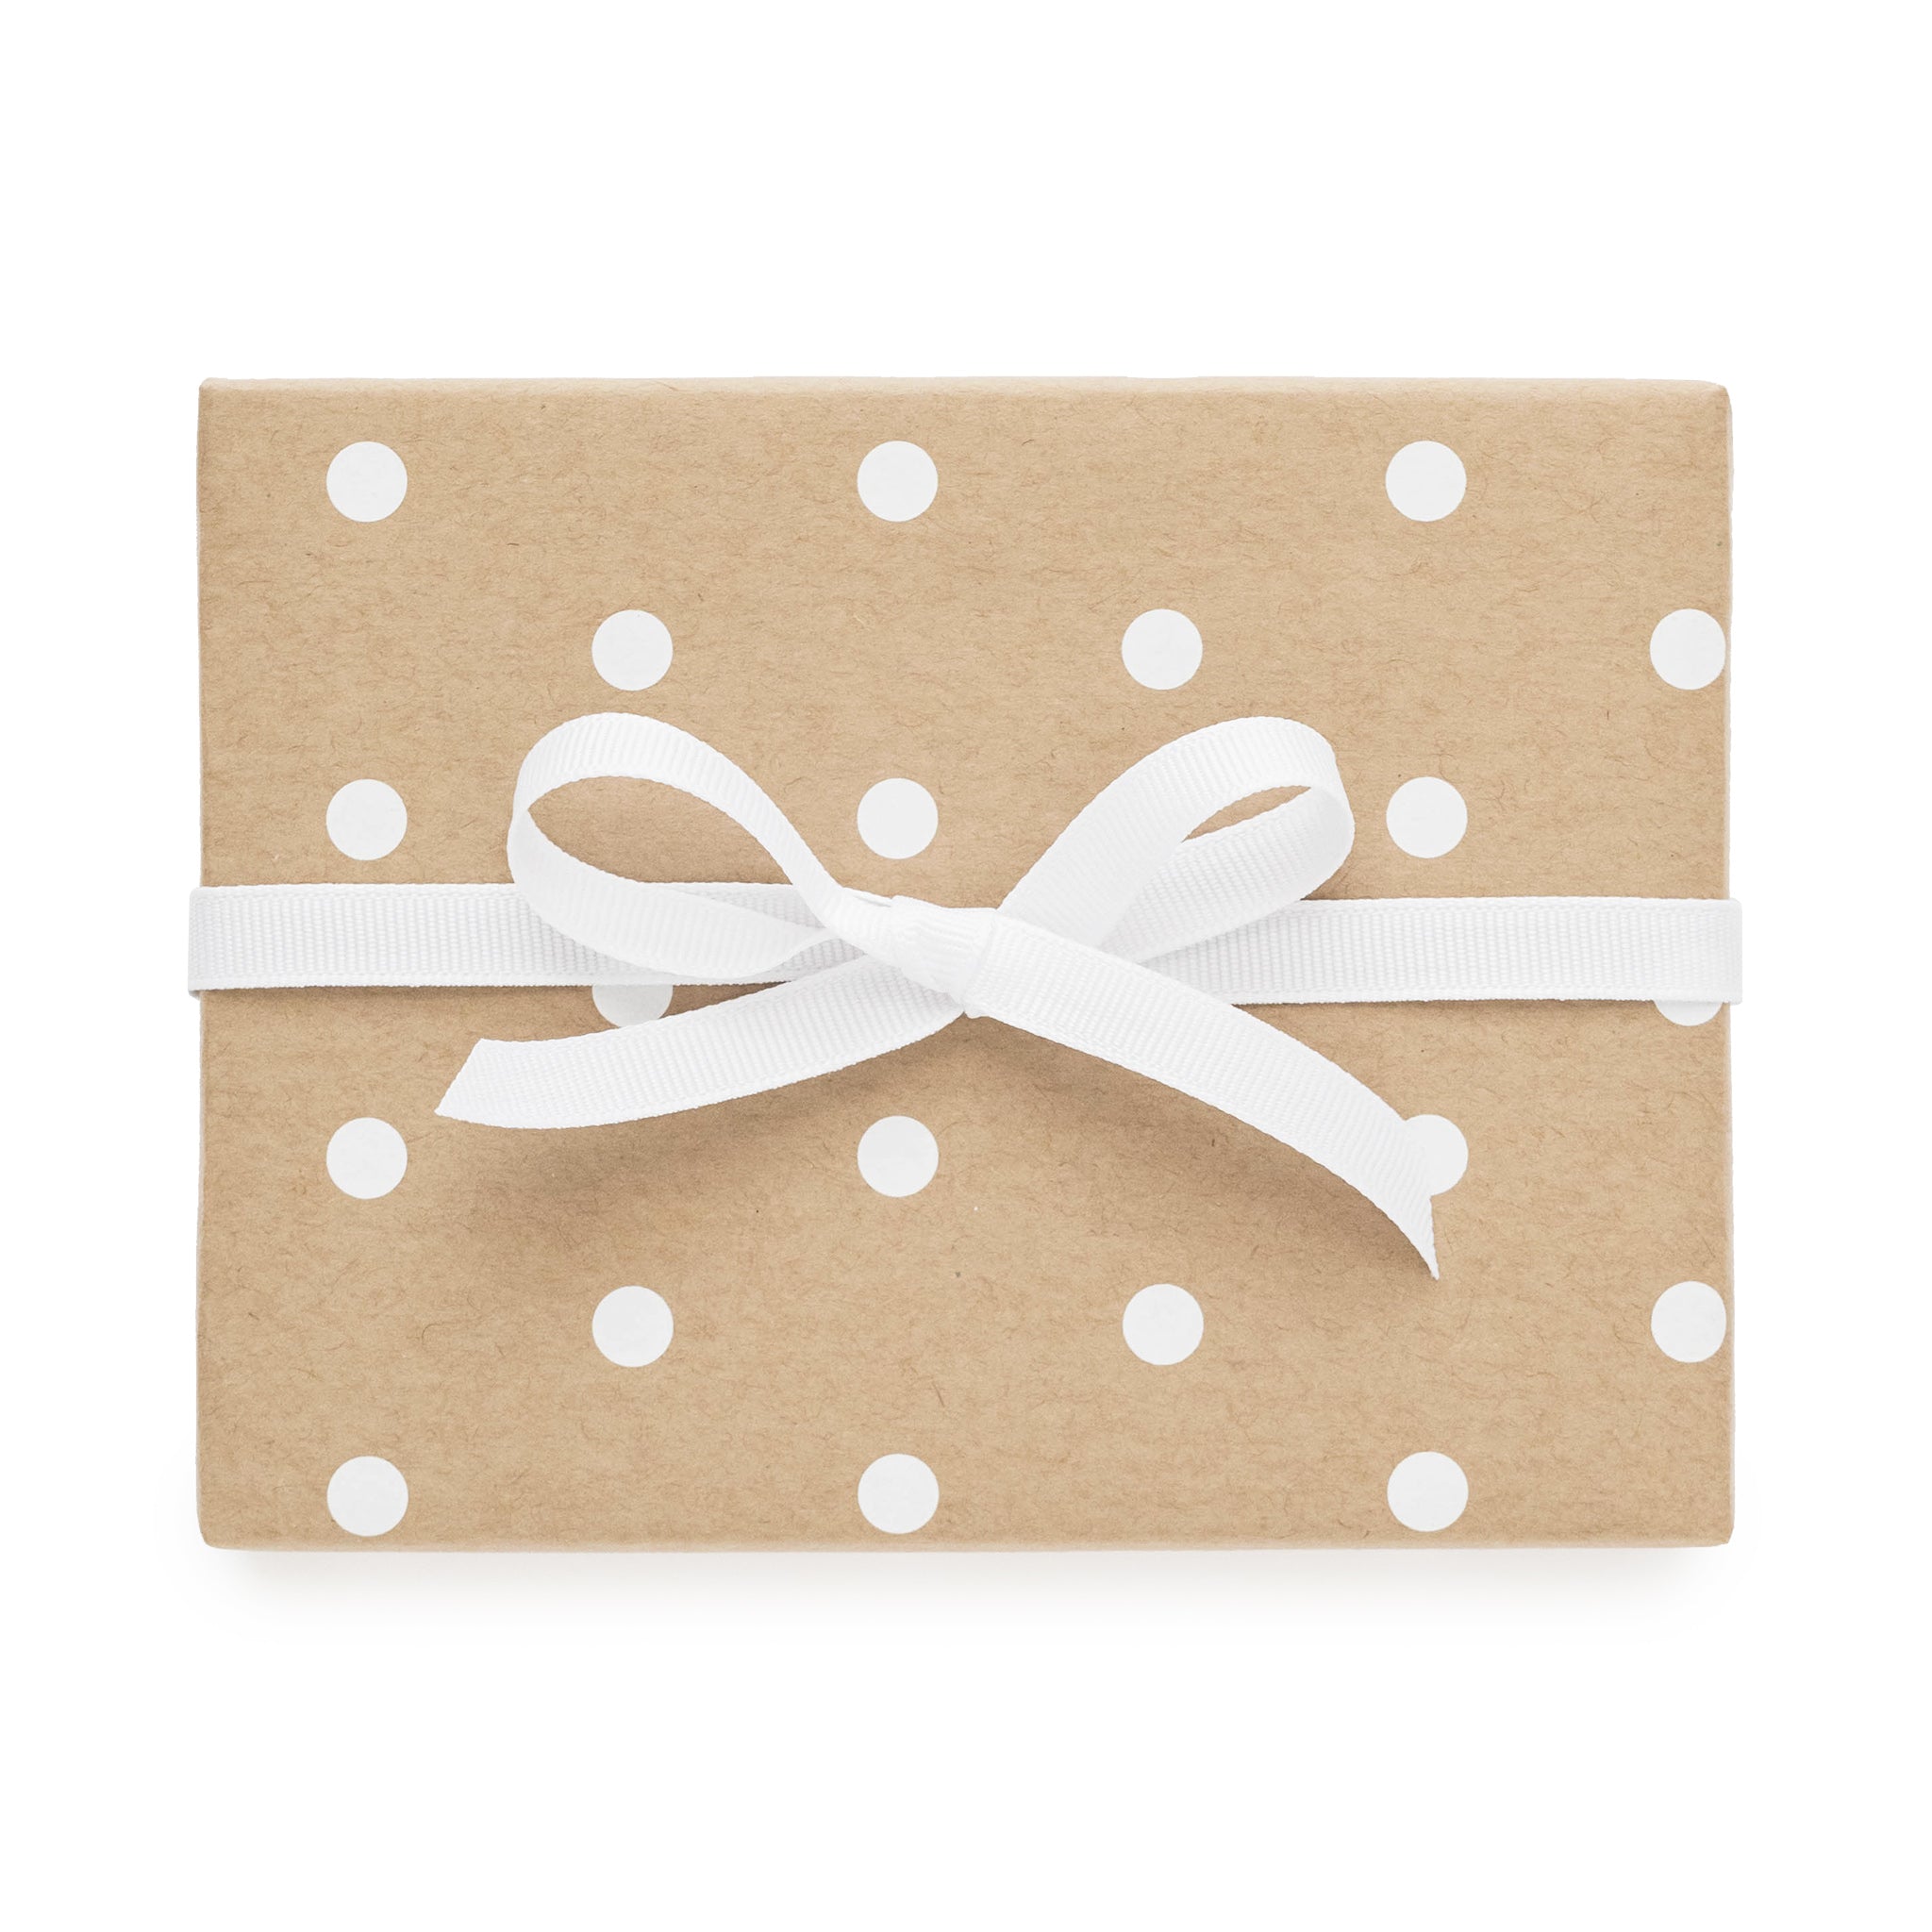 40 brown paper gift wrapping ideas | My Paradissi | Papel de regalo  navidad, Regalos, Envolver regalos de manera original